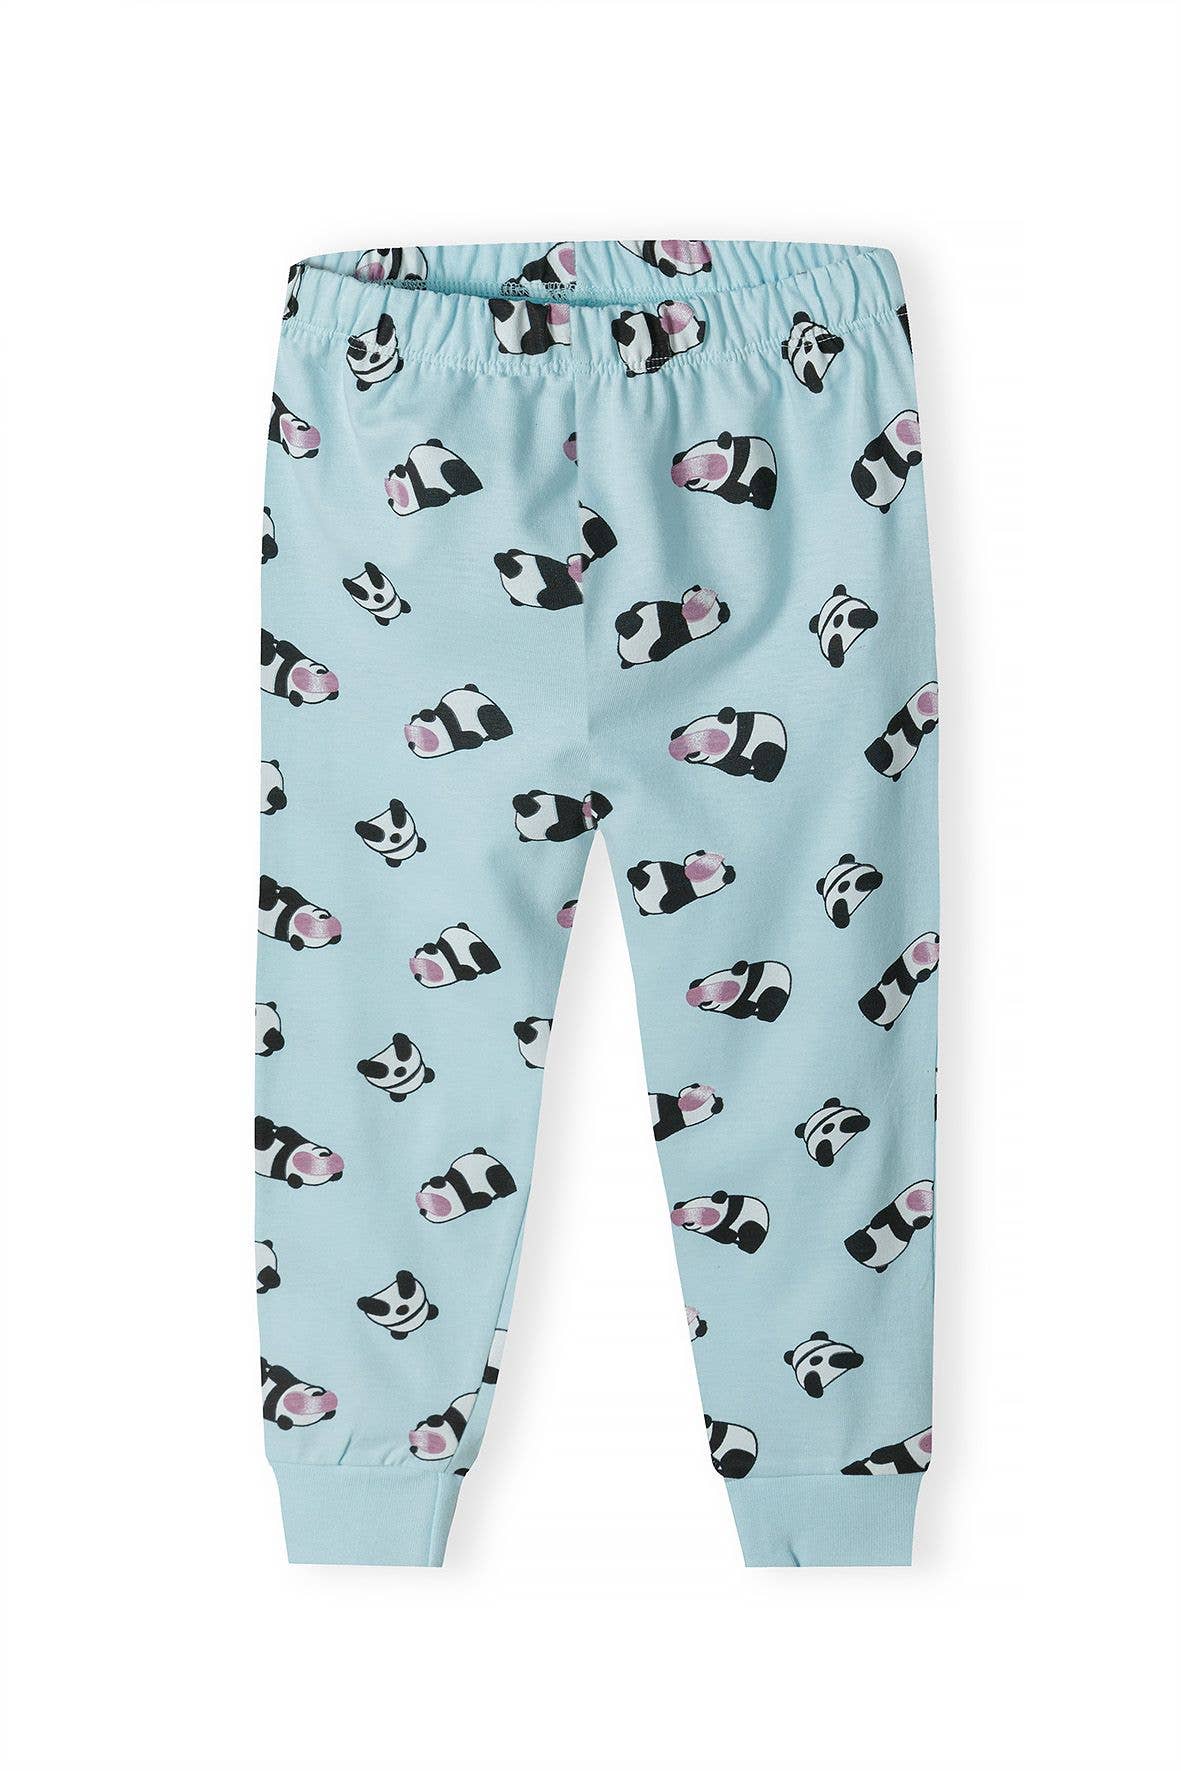 Long Sleeve Pyjamas | Nap Time Panda